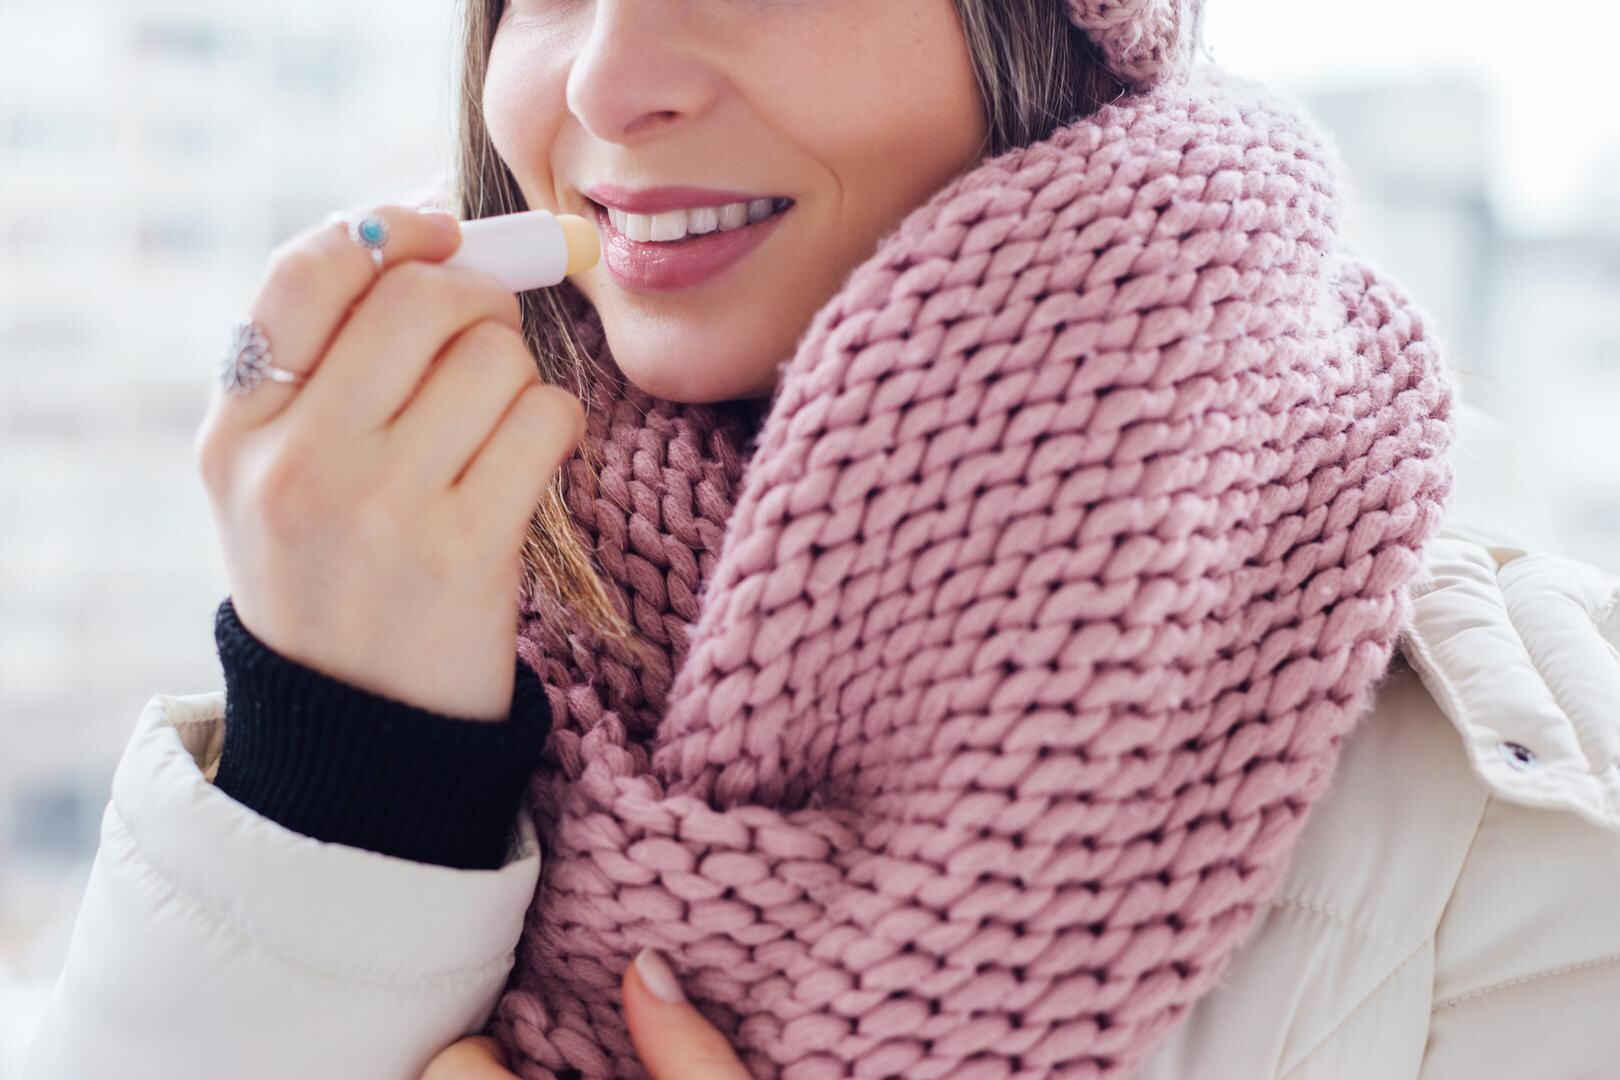 Weldra weer winters droge lippen, maar opgepast! Test-Aankoop waarschuwt voor schadelijke stoffen in lippenbalsem